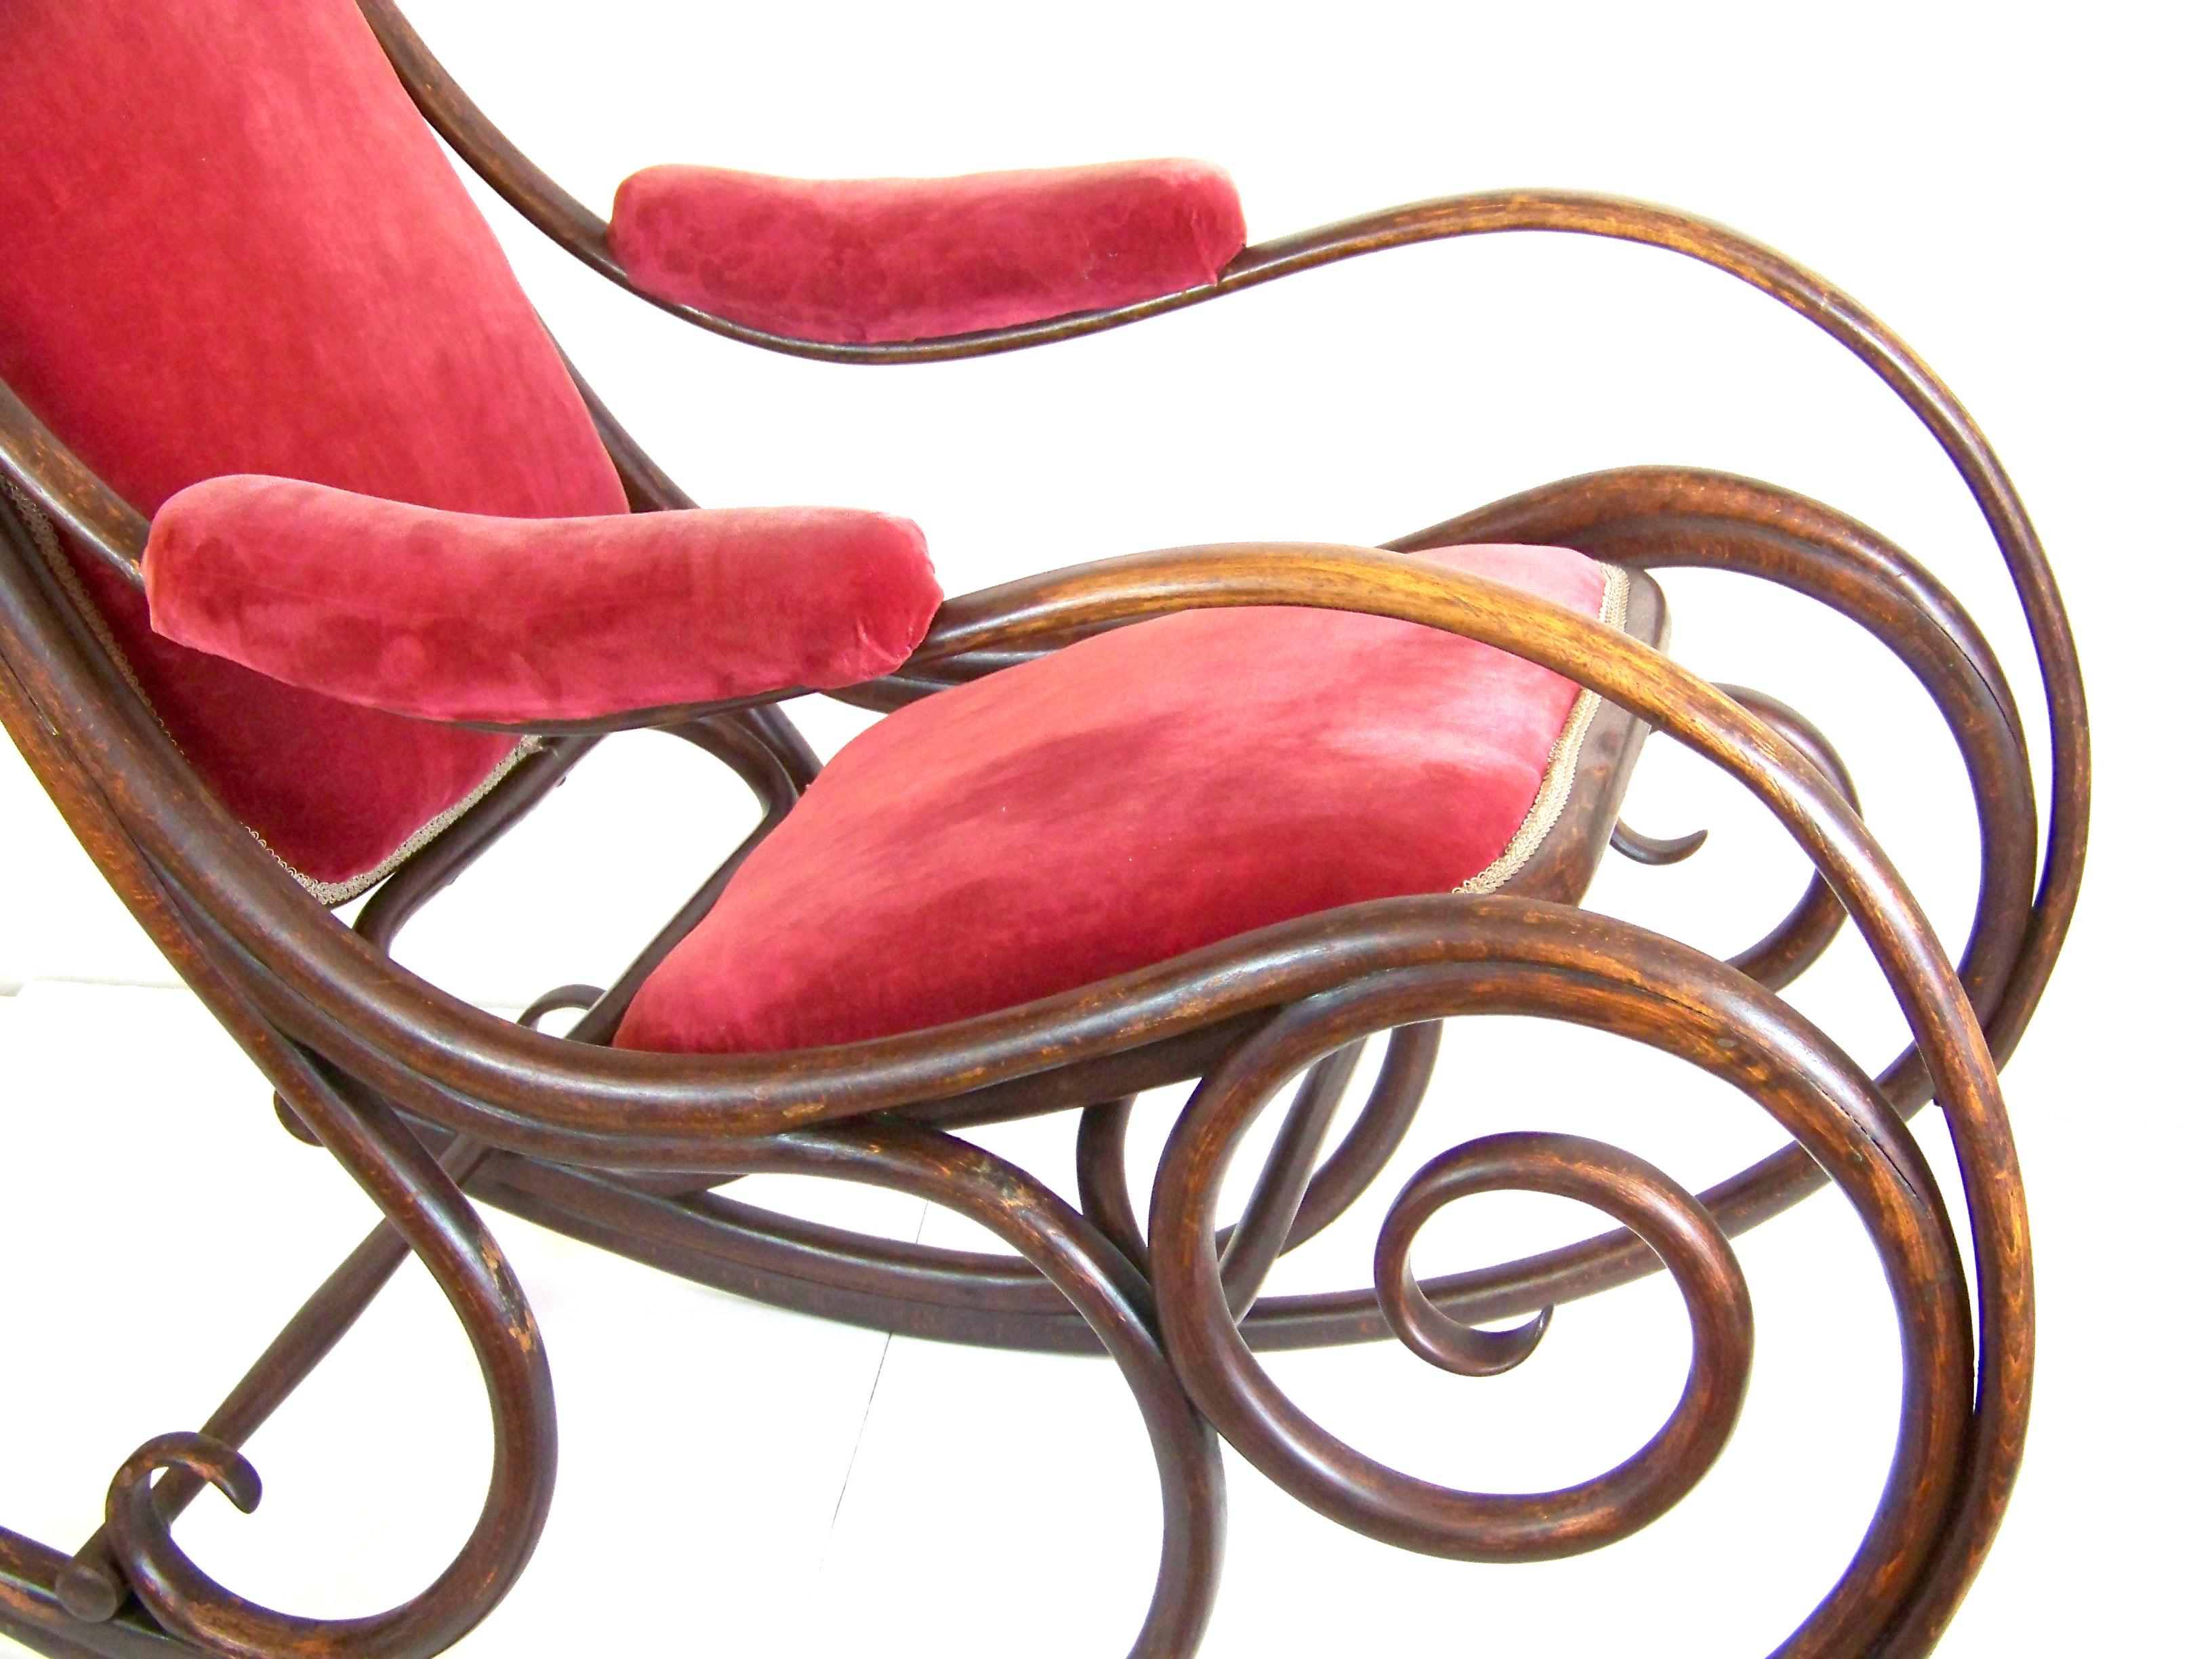 Modèle très rare, la première chaise à bascule, qui a été inventée par Michael Thonet. Selon la forme et le timbre utilisé, il s'agit d'un modèle archaïque très rare. Le fauteuil a été conçu pour être tapissé. C'était à l'époque plus luxueux qu'avec